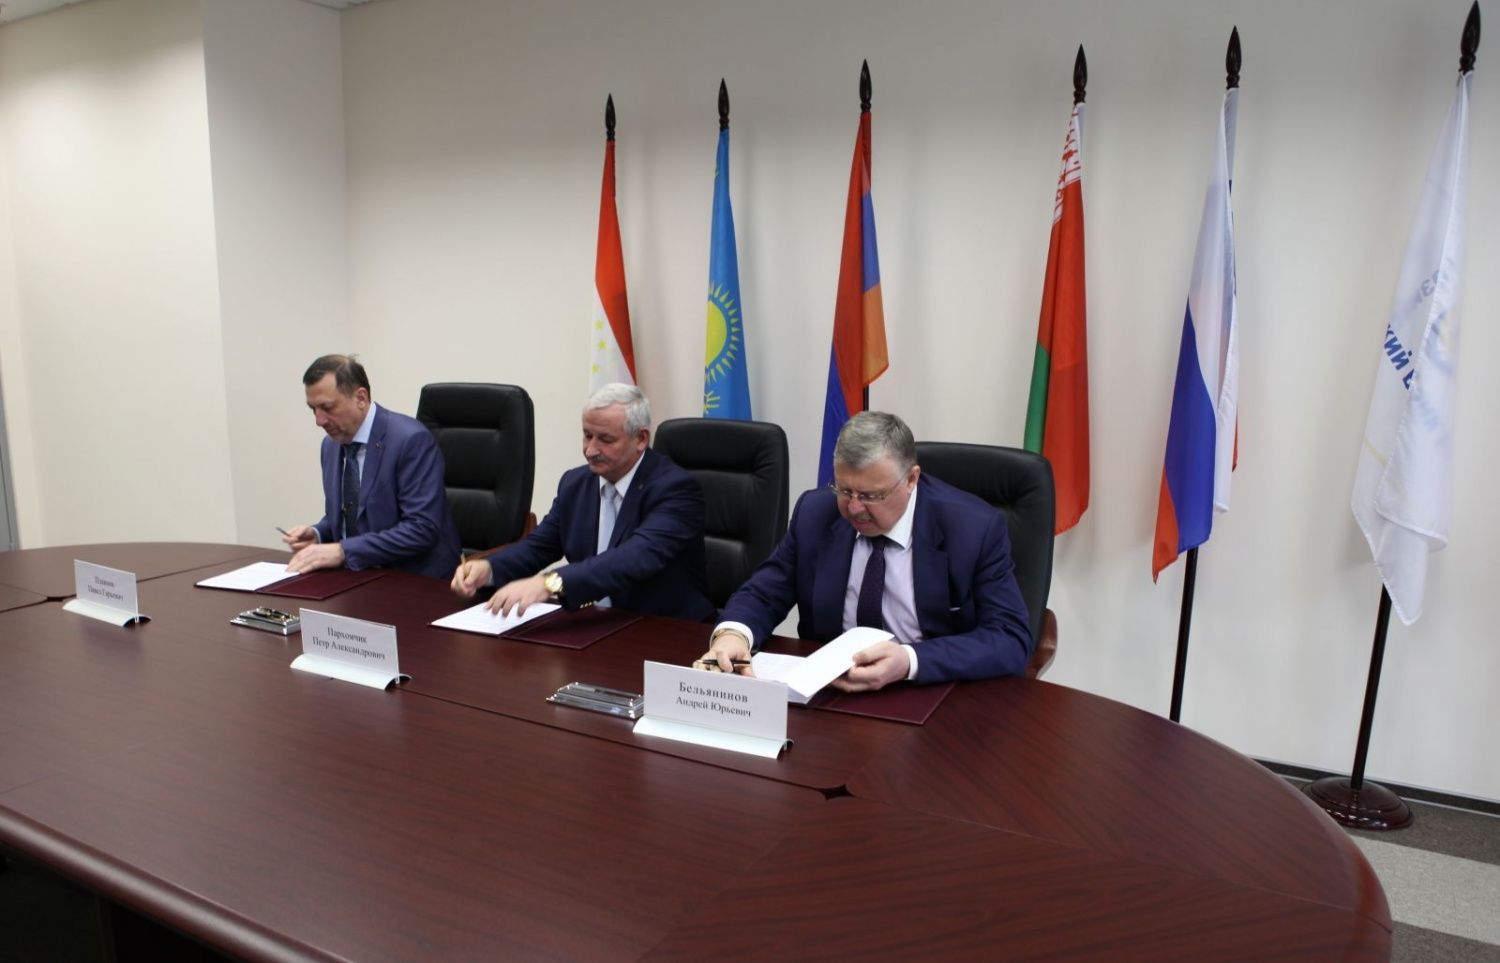 Евразийский банк развития, ОАО «БЕЛАЗ» и НПК «Звезда» подписали соглашение о сотрудничестве